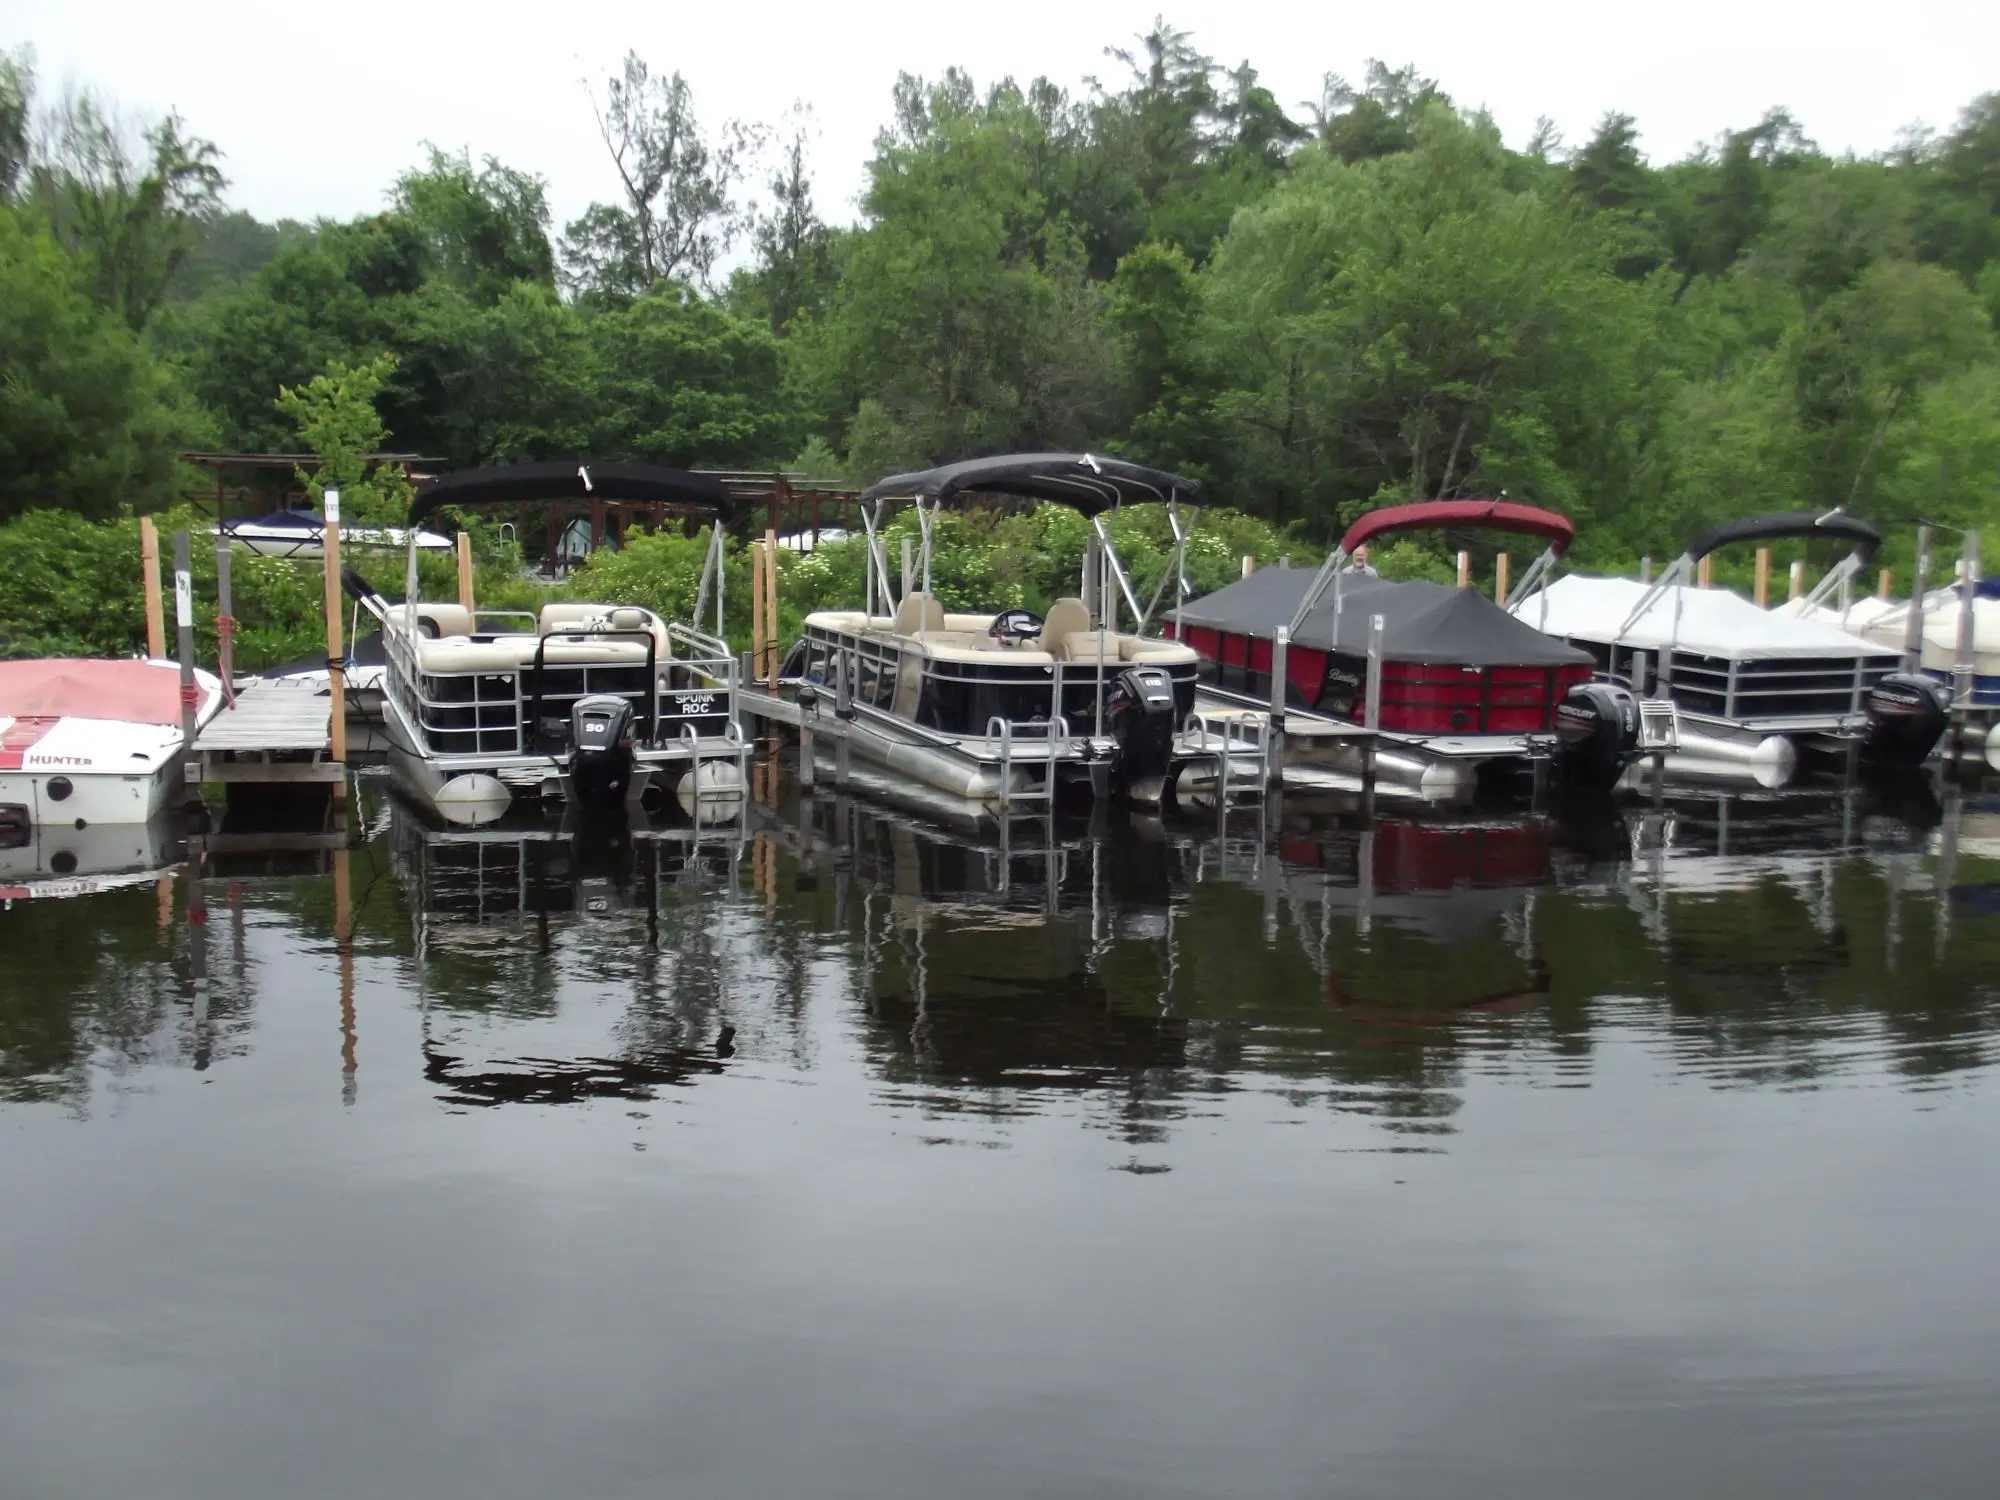 Winnipesaukee Boat Slip Rentals / Lake Winnipesaukee Boat Rentals And ...